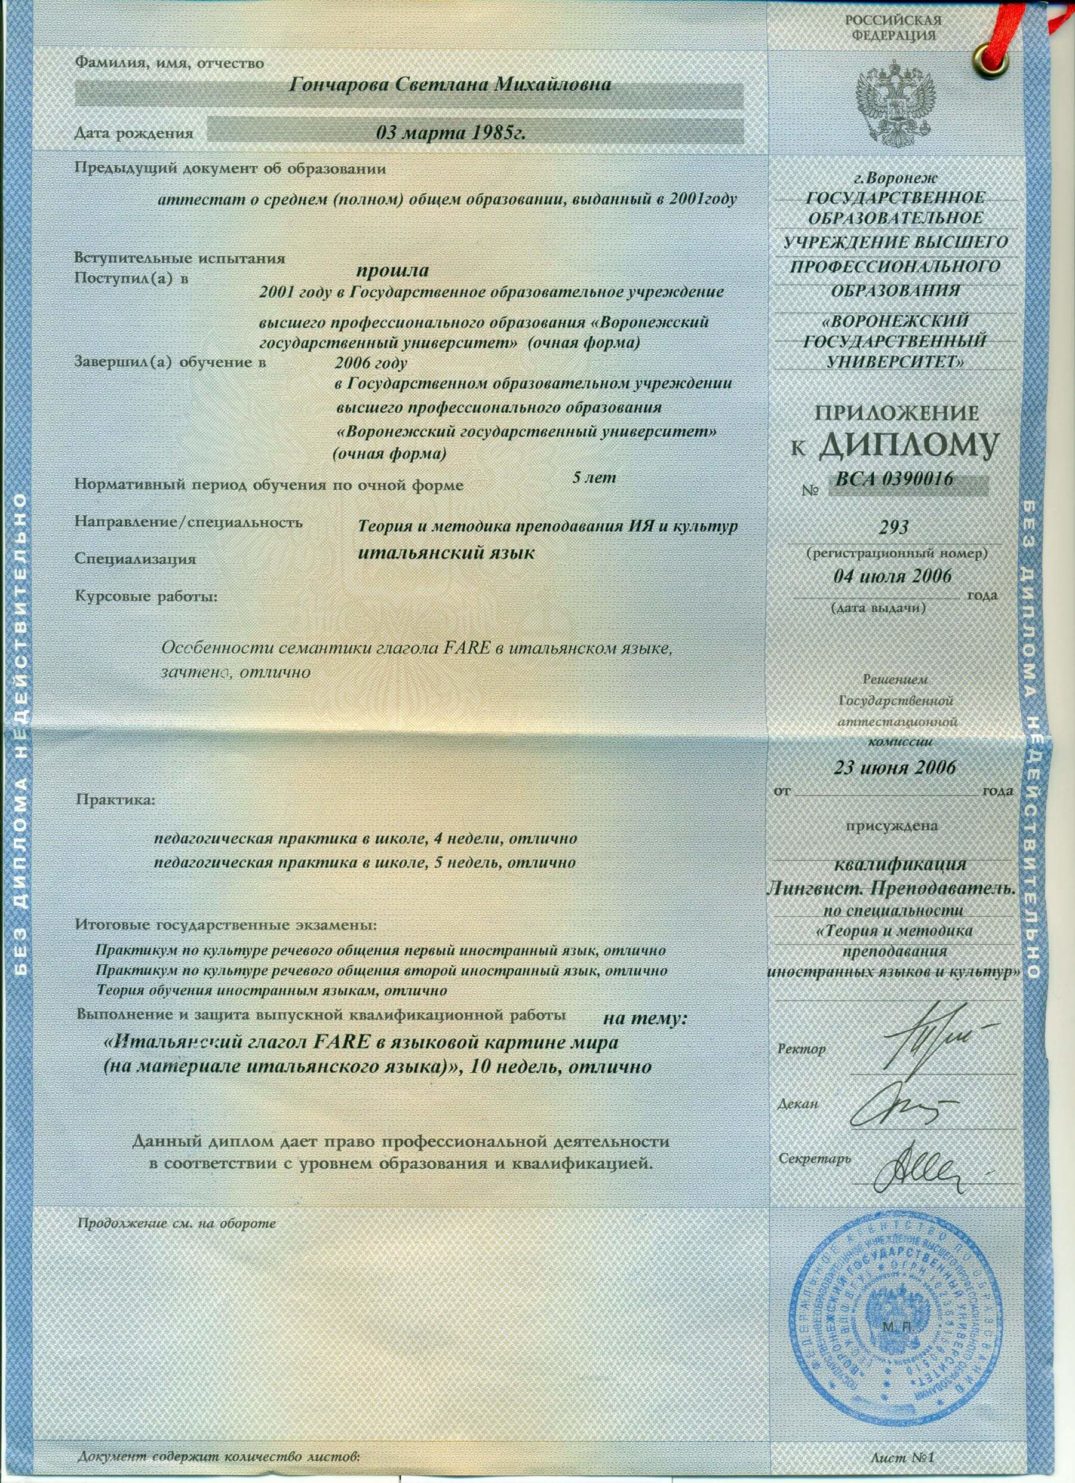 Приложение к диплому ВГУ Гончаровой Светланы Михайловны